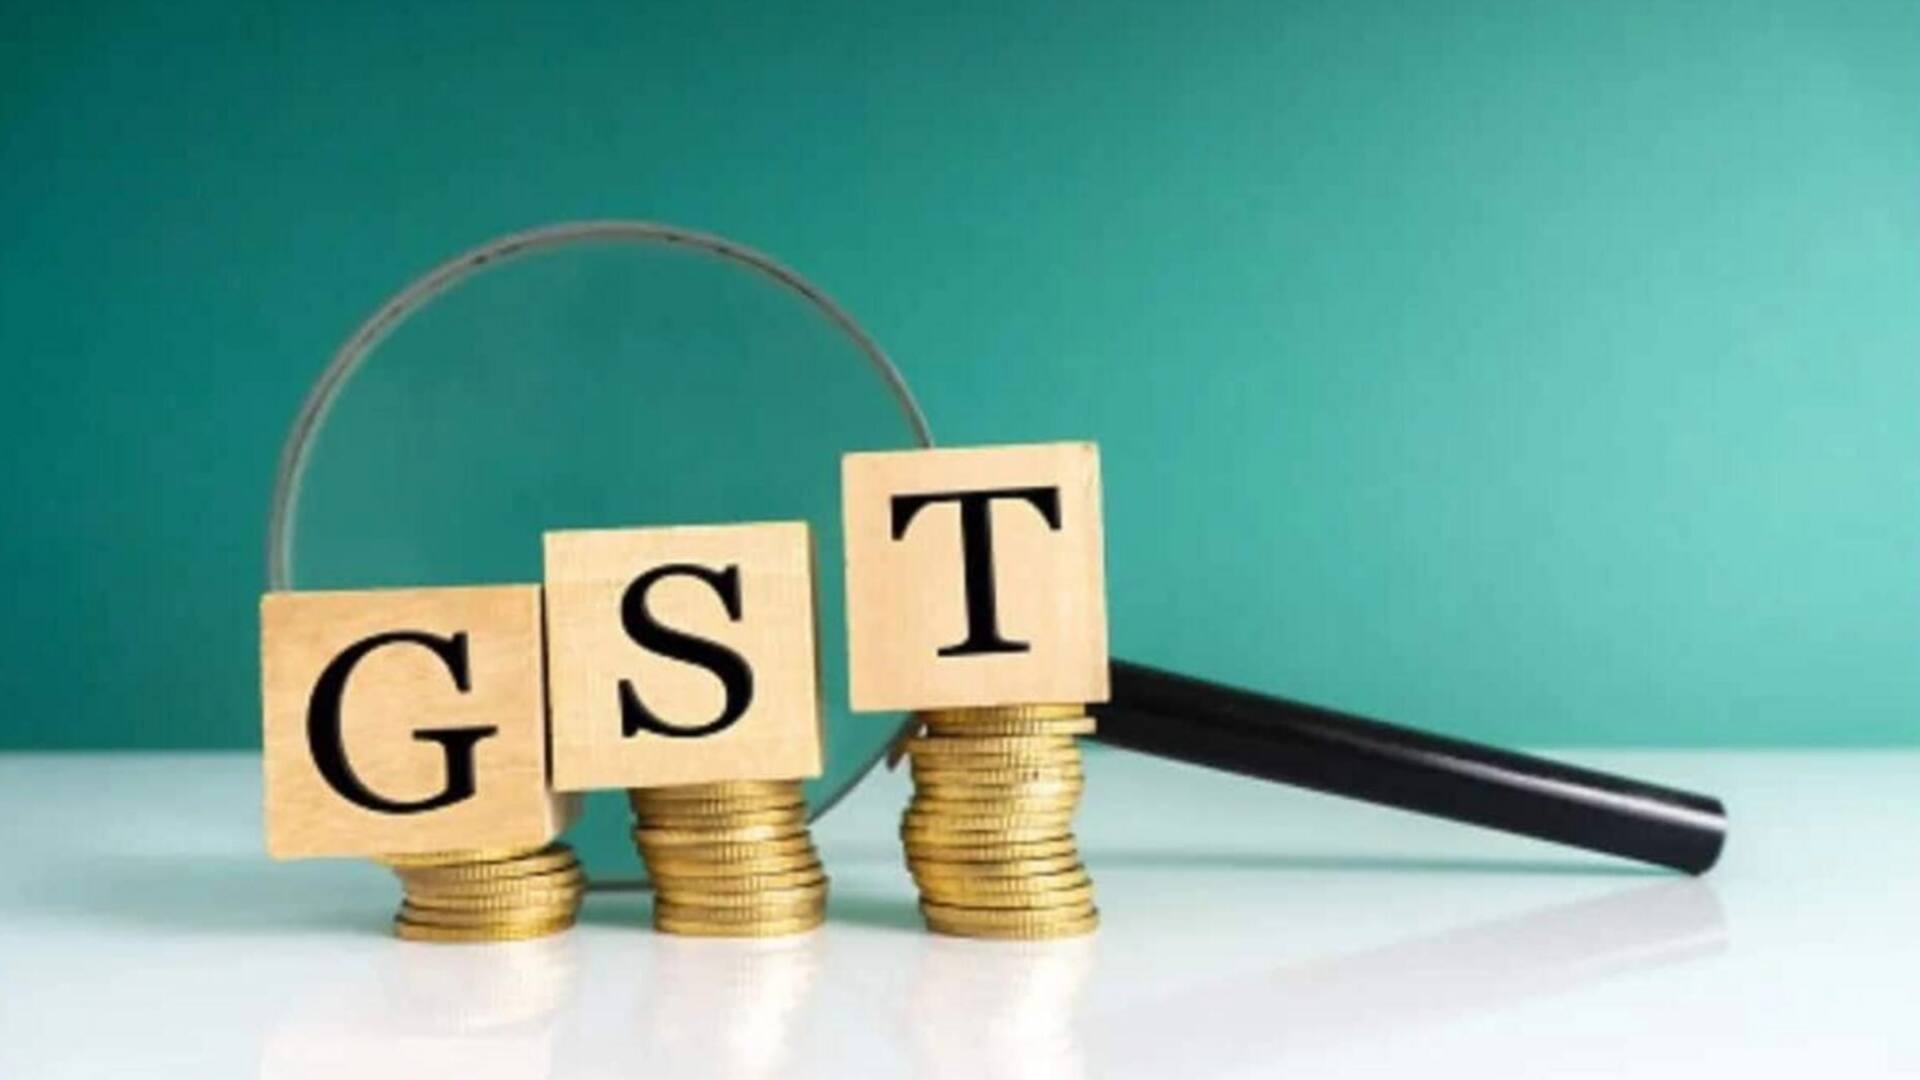 GST संग्रह सितंबर में 10 प्रतिशत बढ़कर 1.63 लाख करोड़ रुपये पहुंचा